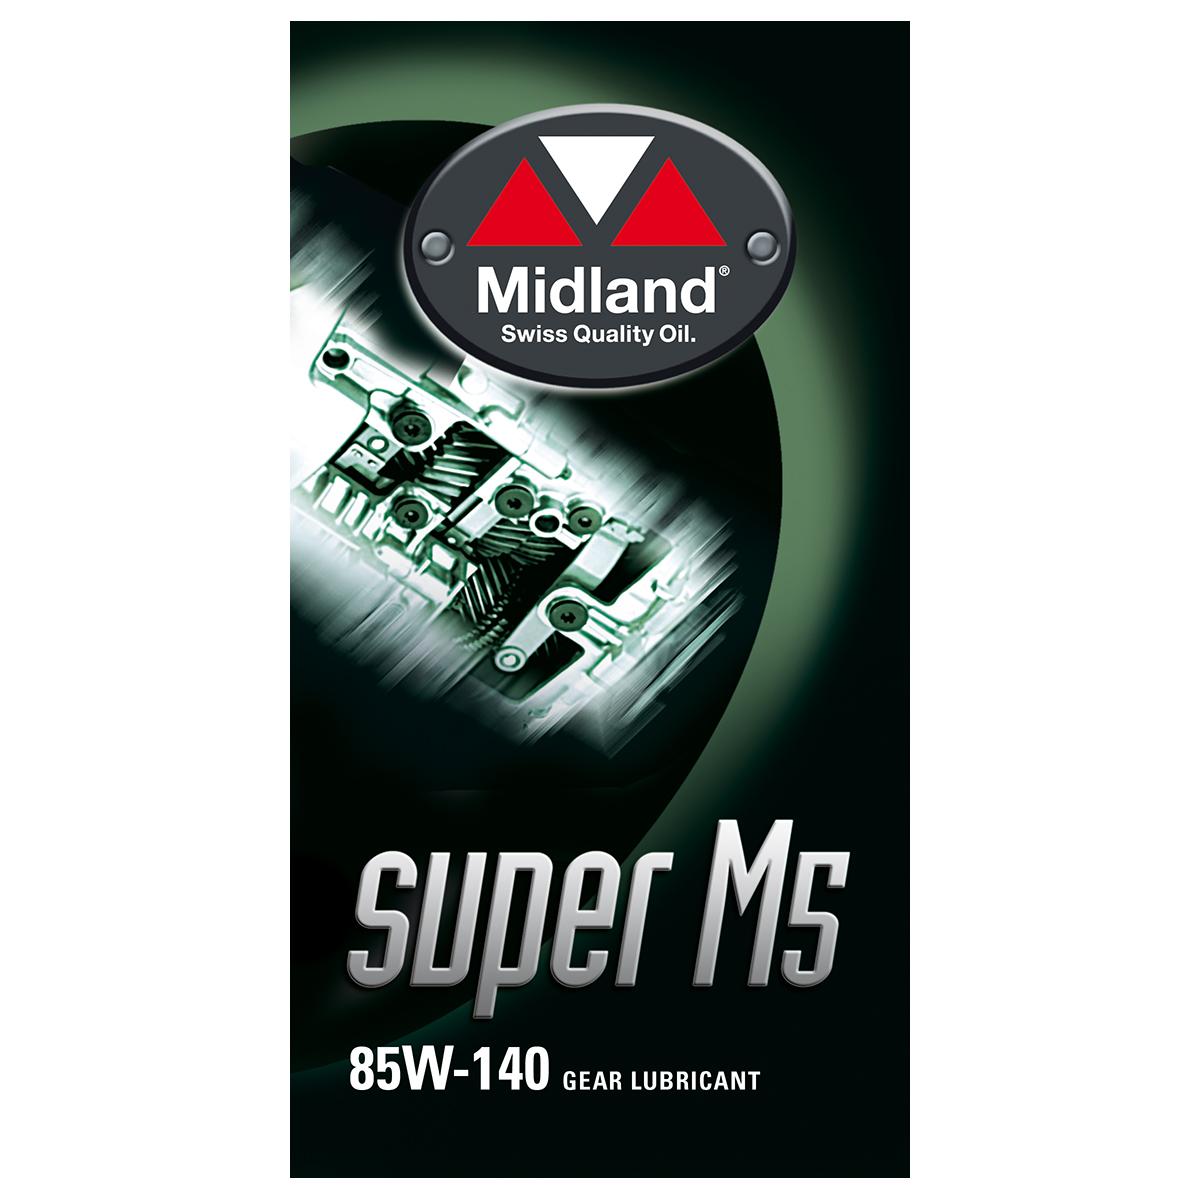 Super M5 85W-140